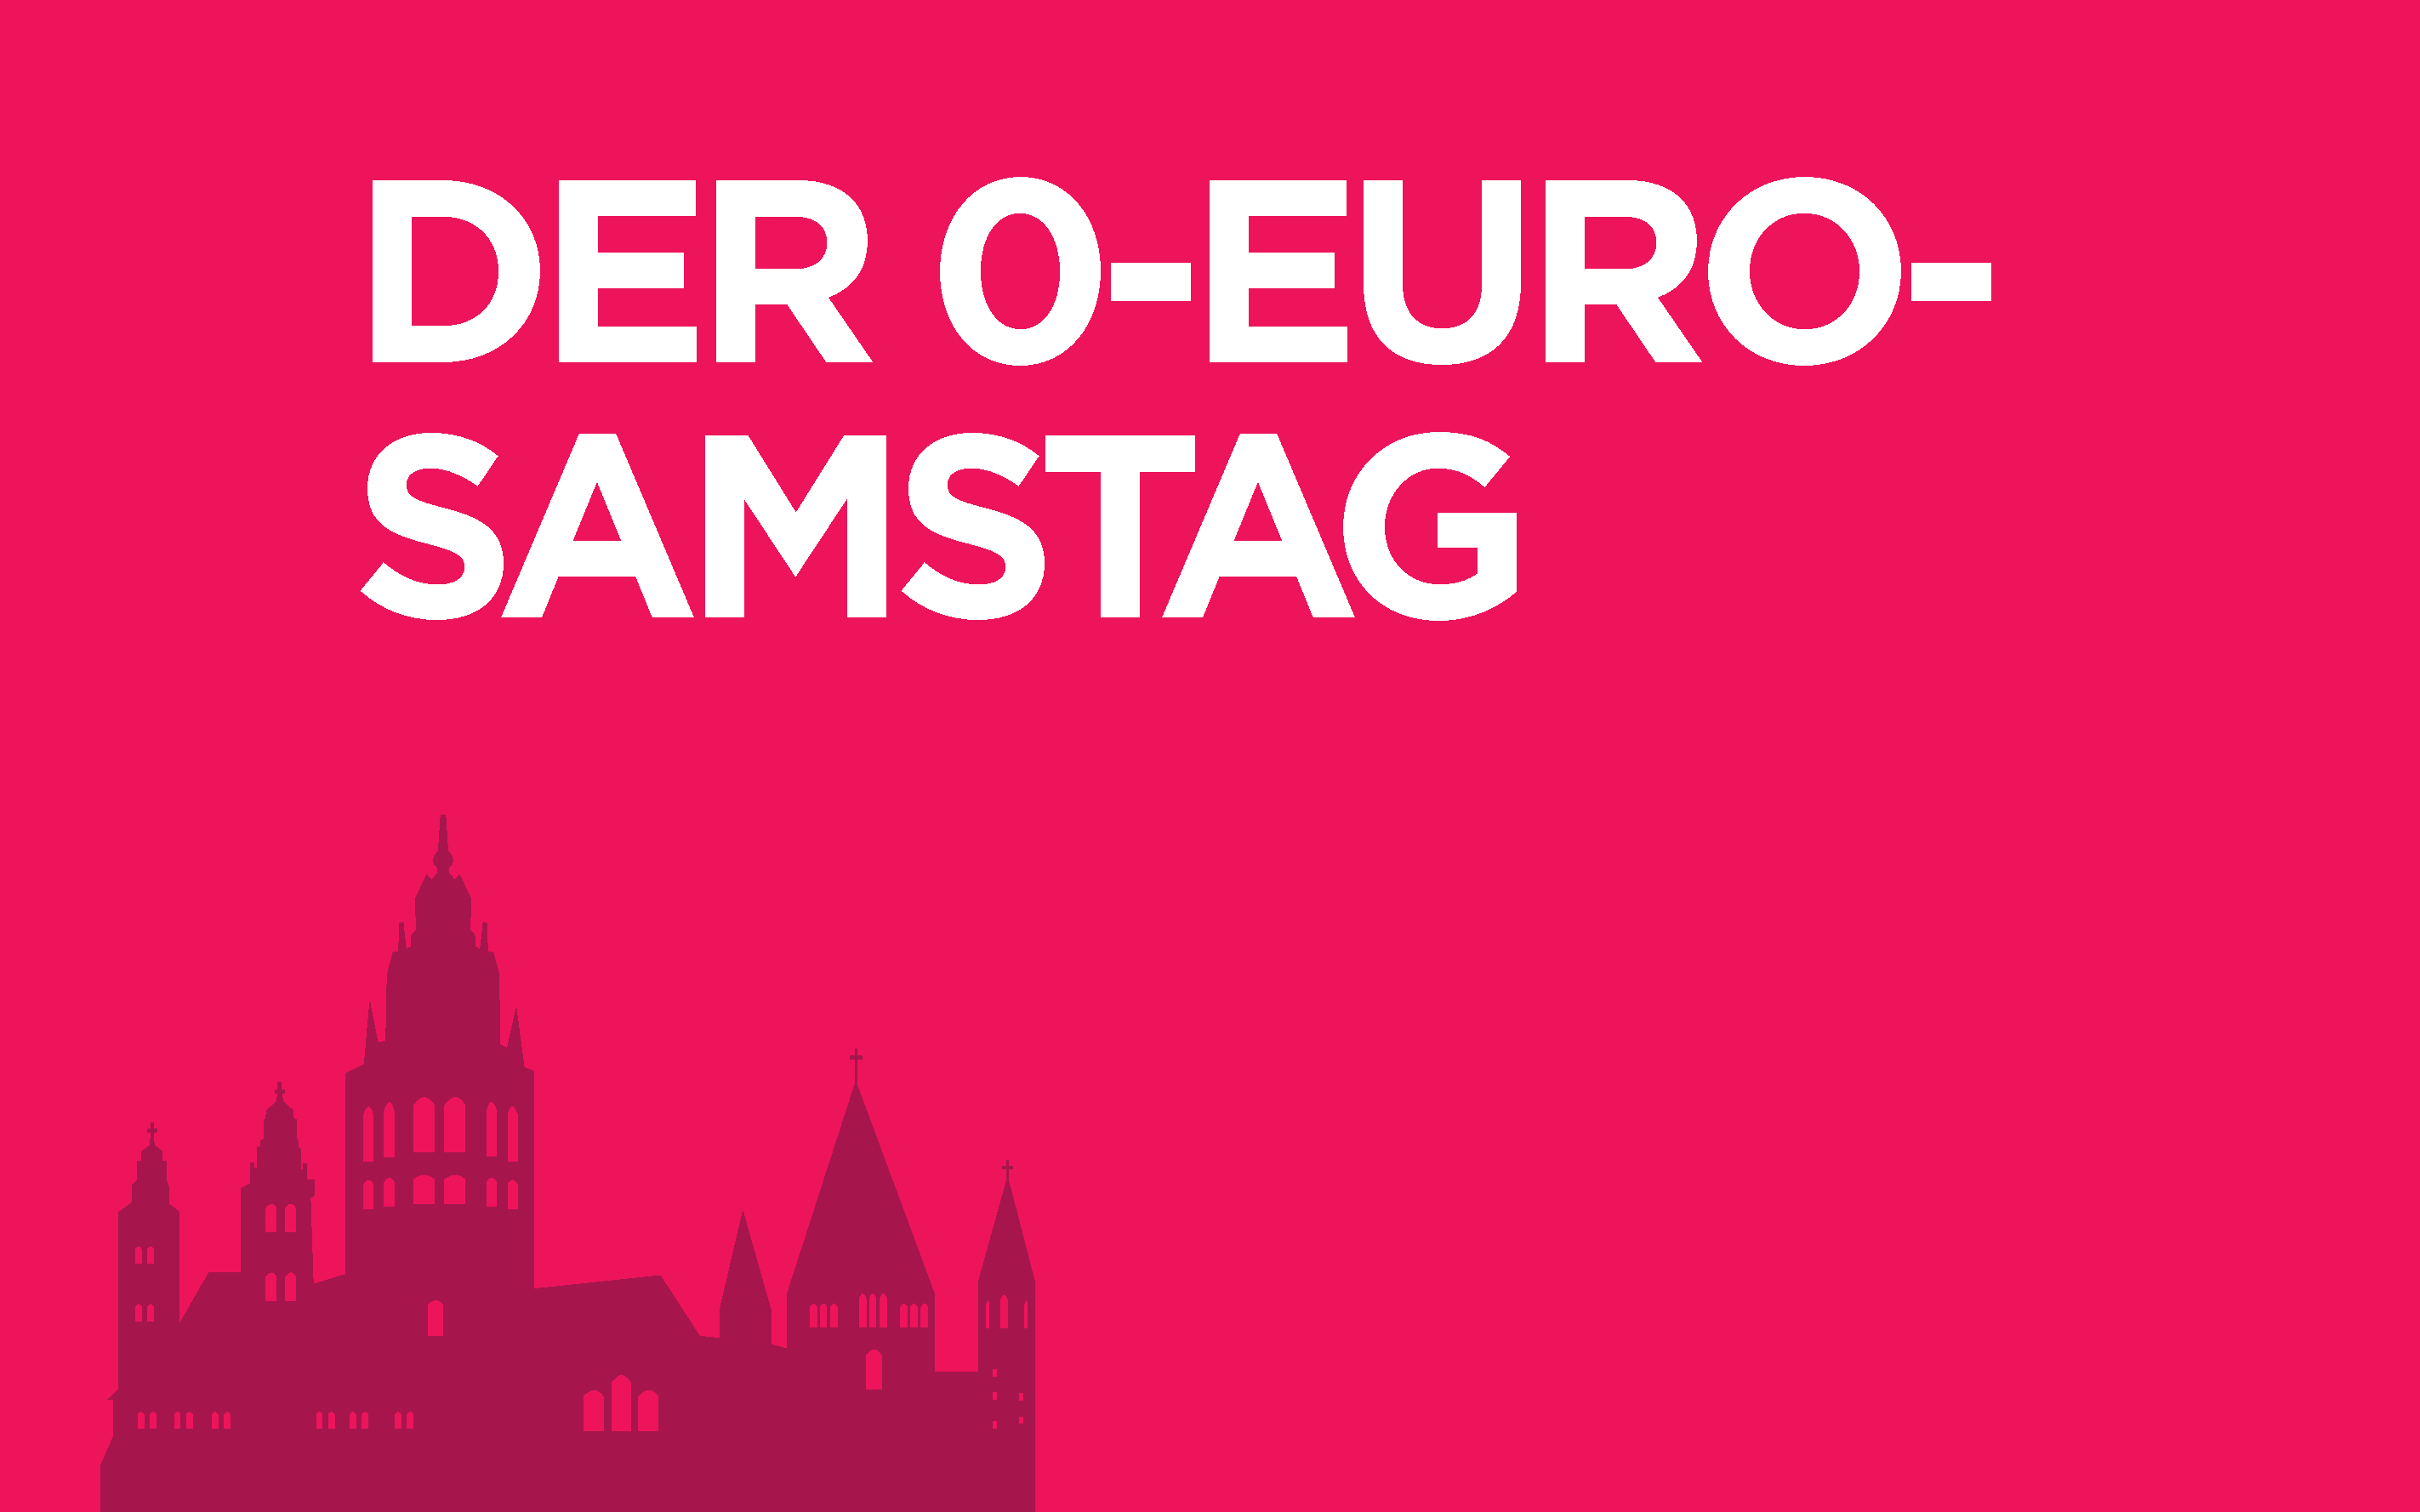 Bild mit Text 0-Euro-Samstag sowie dem Mainzer Dom